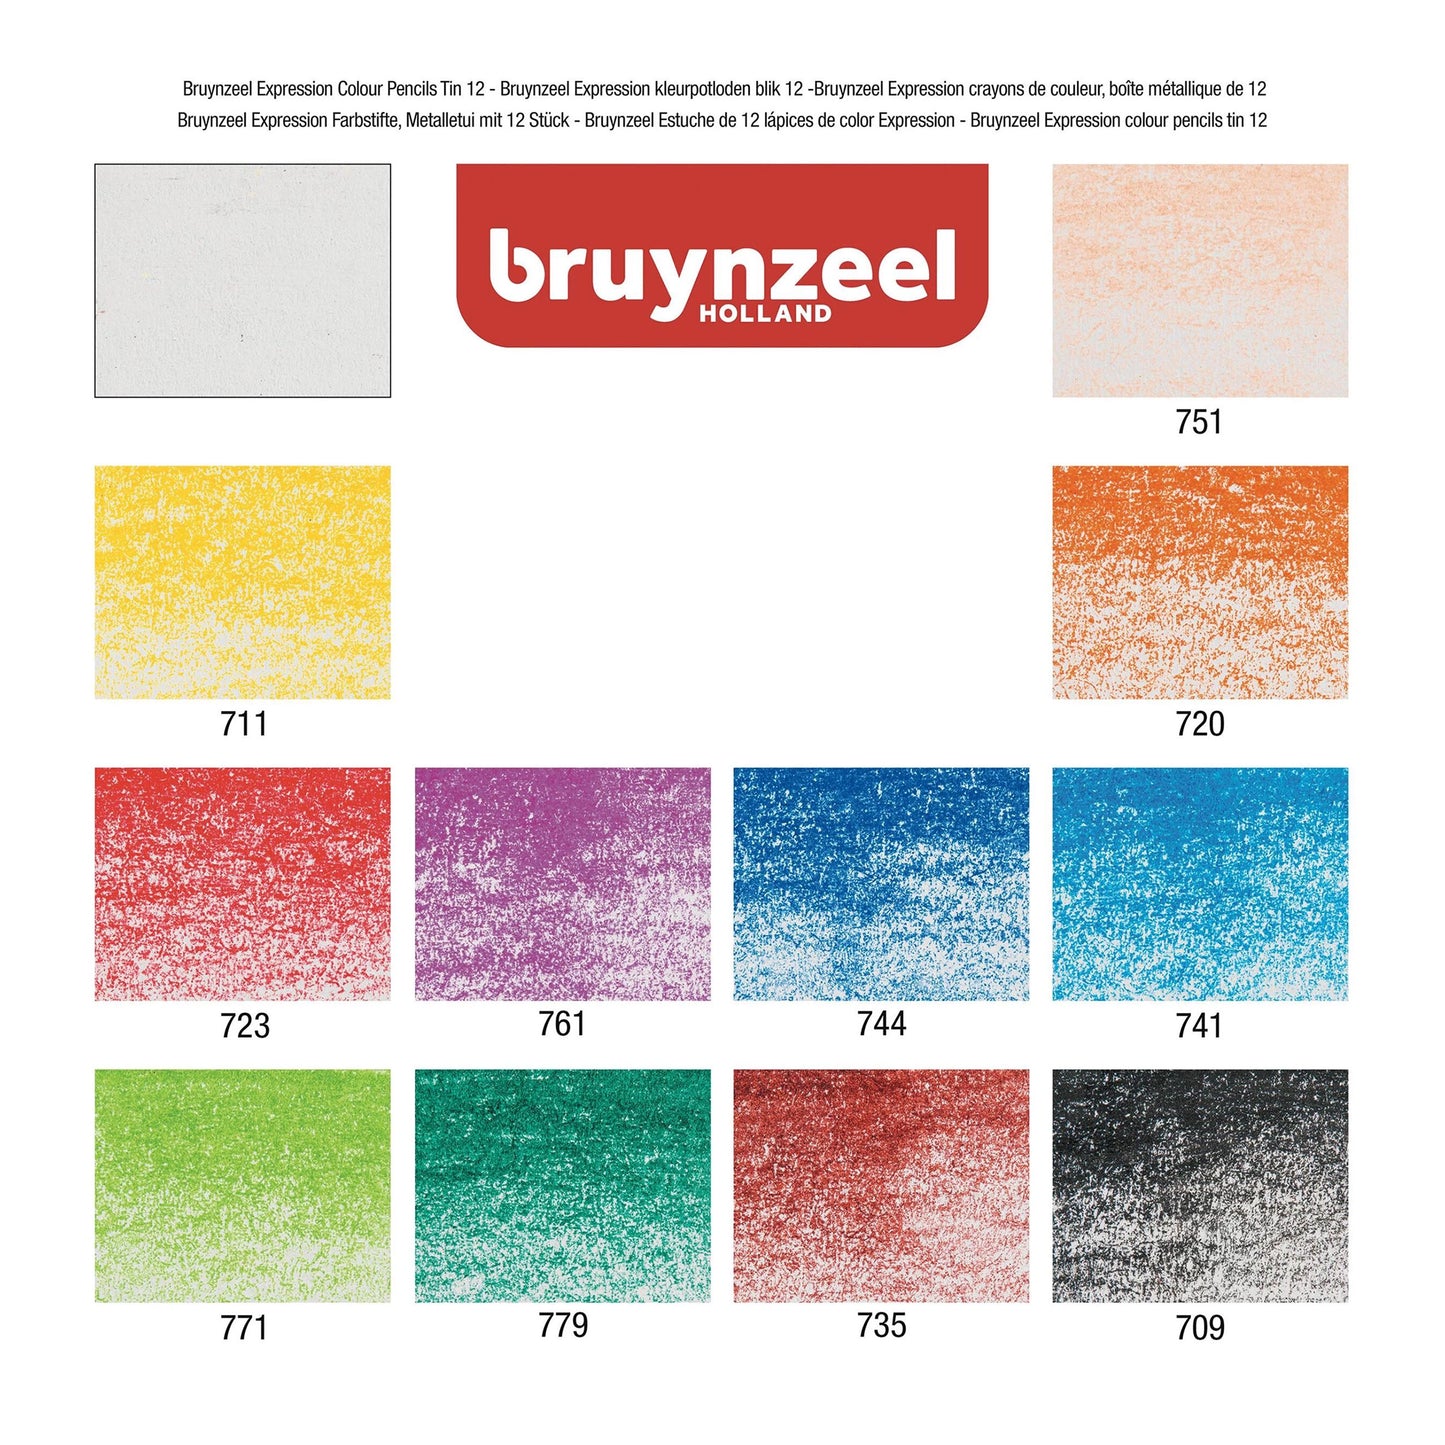 Bruynzeel Expression Fargeblyanter, 12-sett